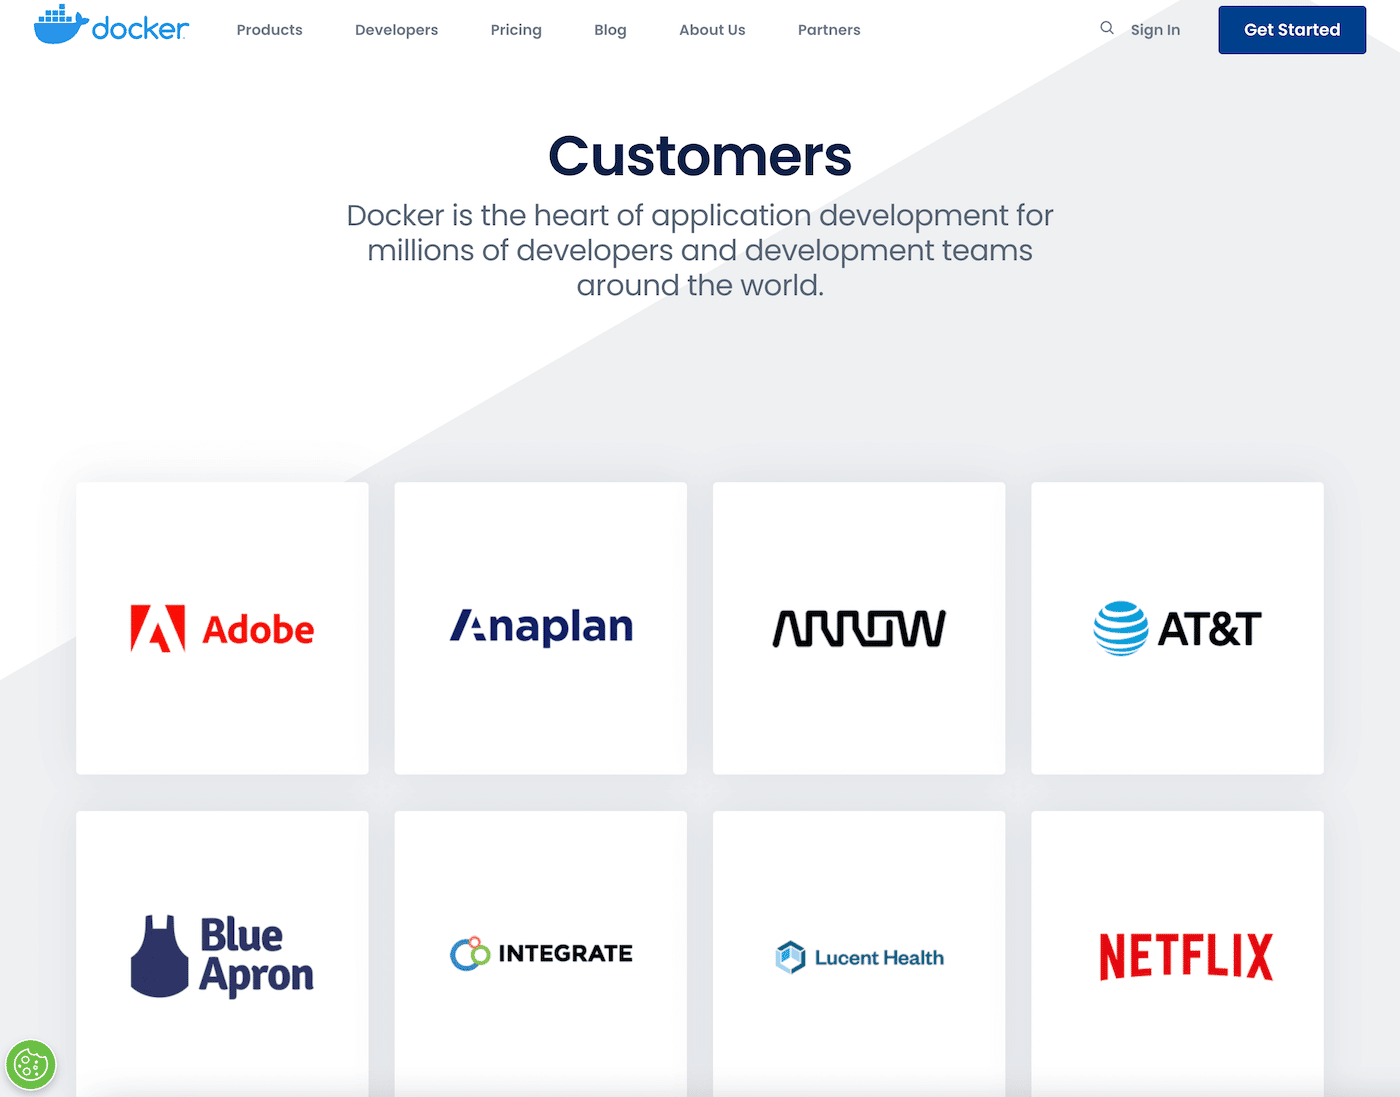 Een screenshot van bedrijven die Docker gebruiken